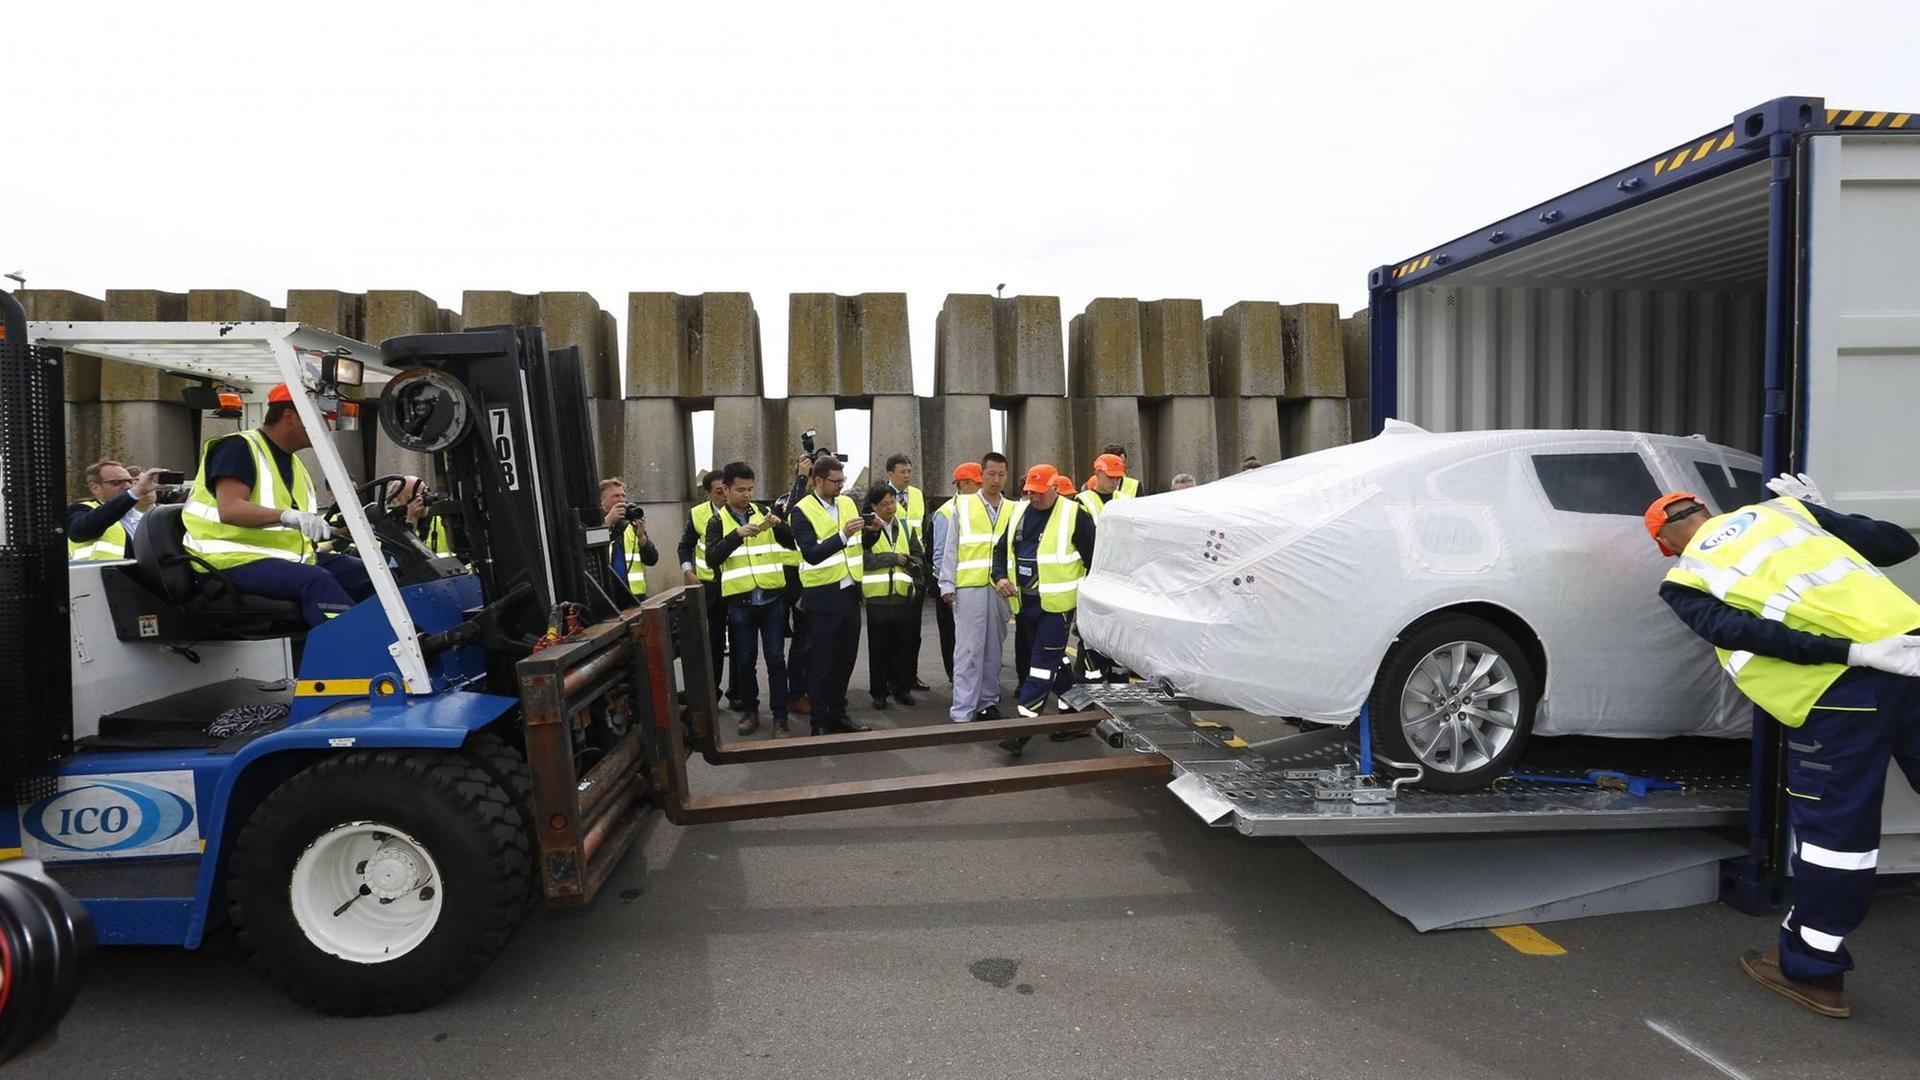 Ankunft des neuen Volvo Sedan im belgischen Haften Zeebrugge am 1. Juli 2017, einer von 123 neuen Volvos, die im Nordwesten Chinas produziert wurden.